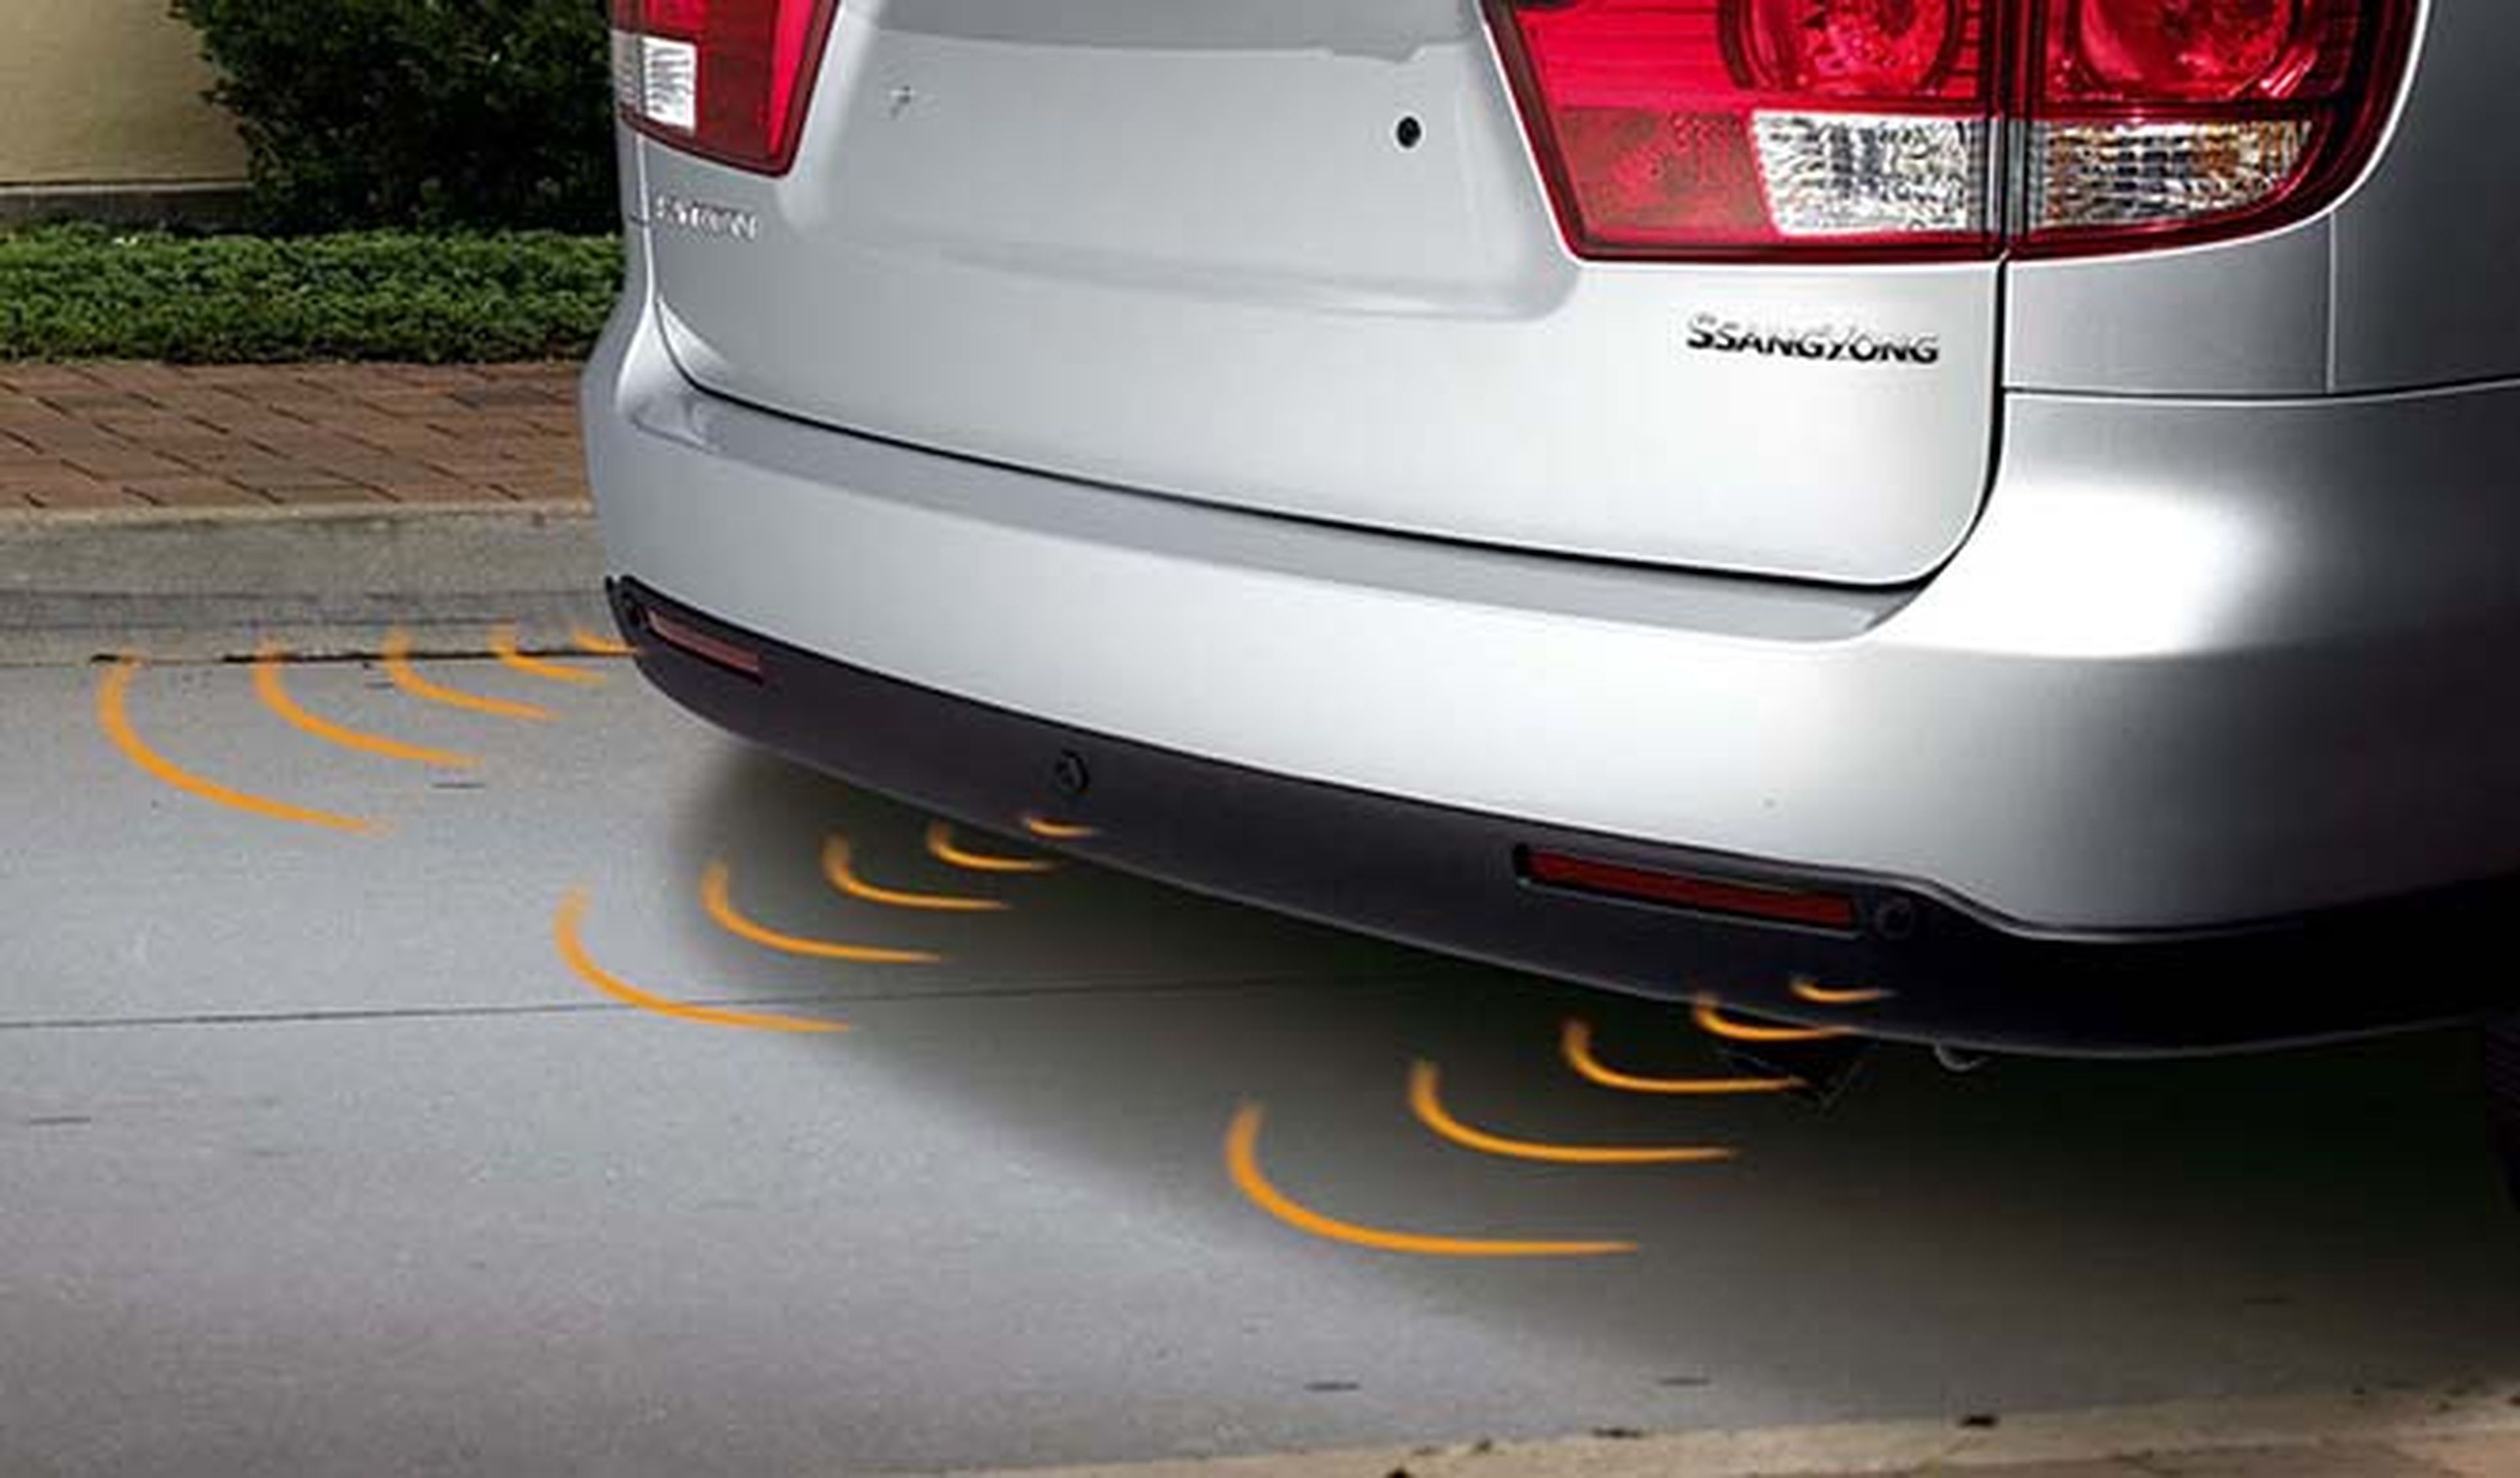 Instalar sensores de aparcamiento: ¿qué debes saber?